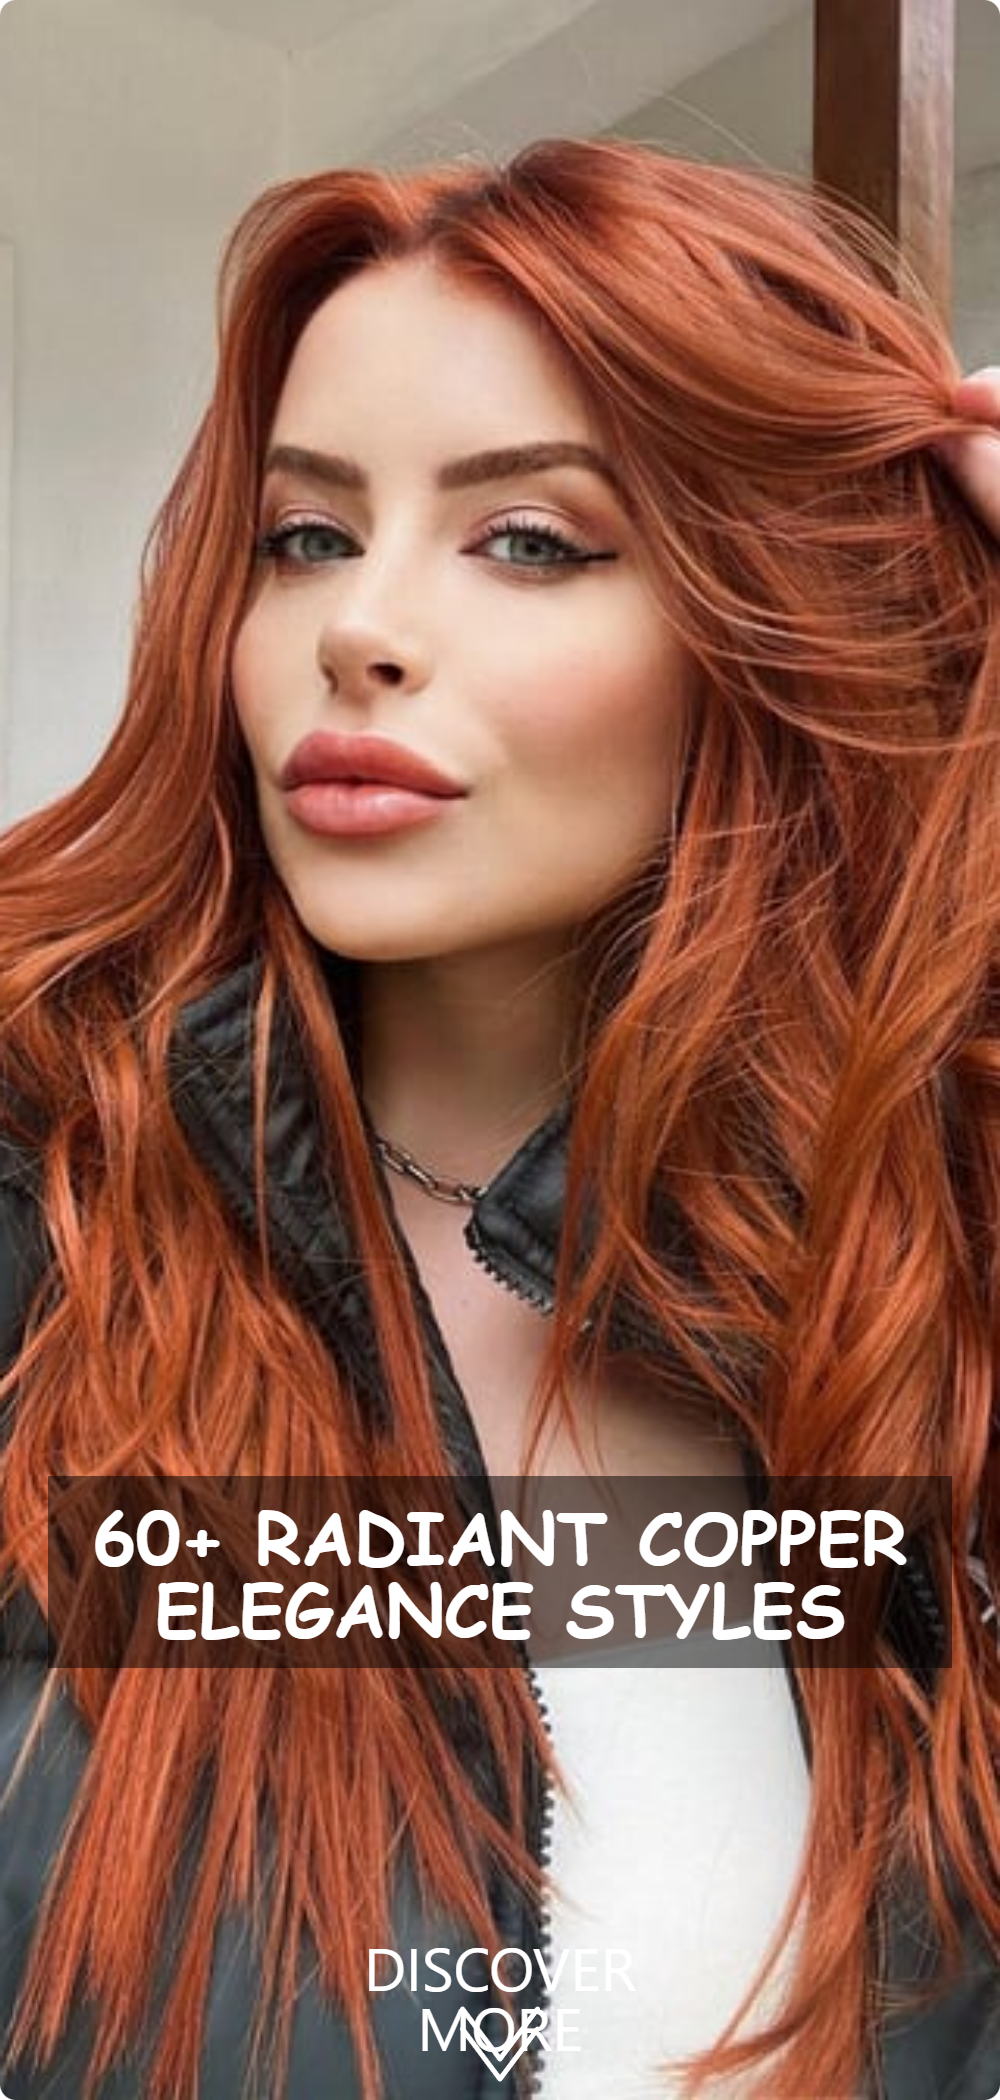 Radiant Copper Elegance